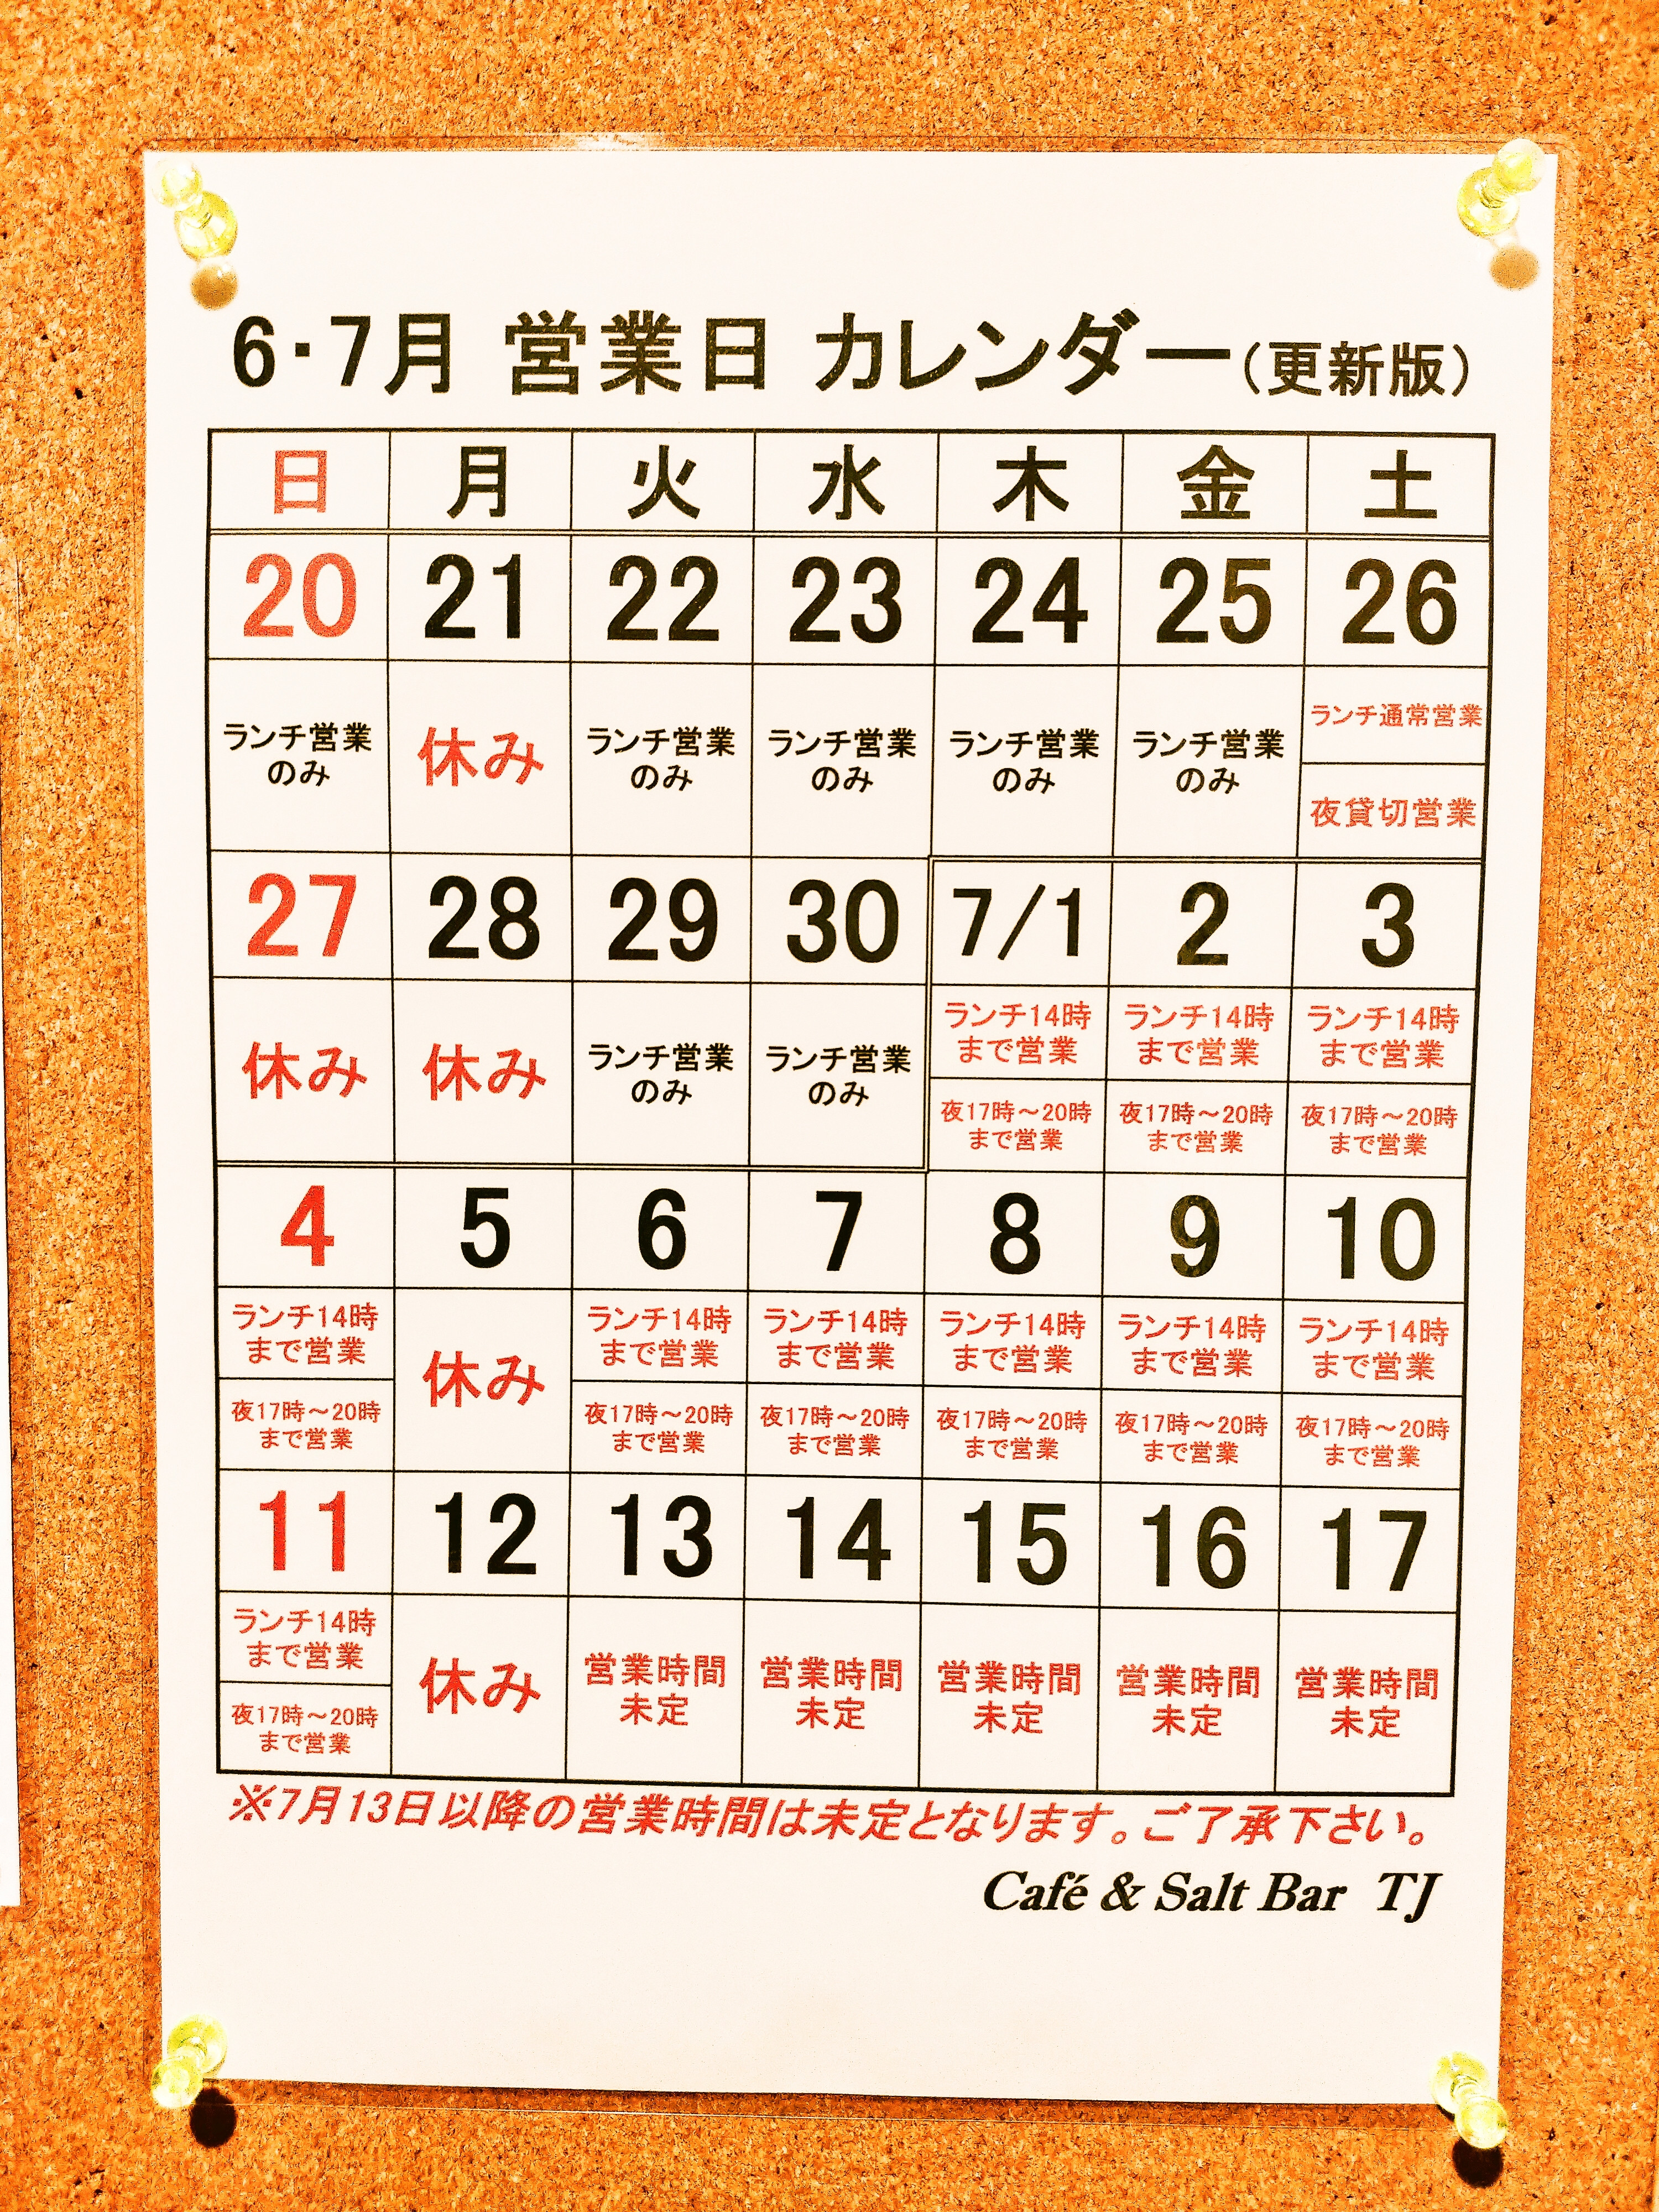 6月 7月営業カレンダー Cafe Salt Bar Tj